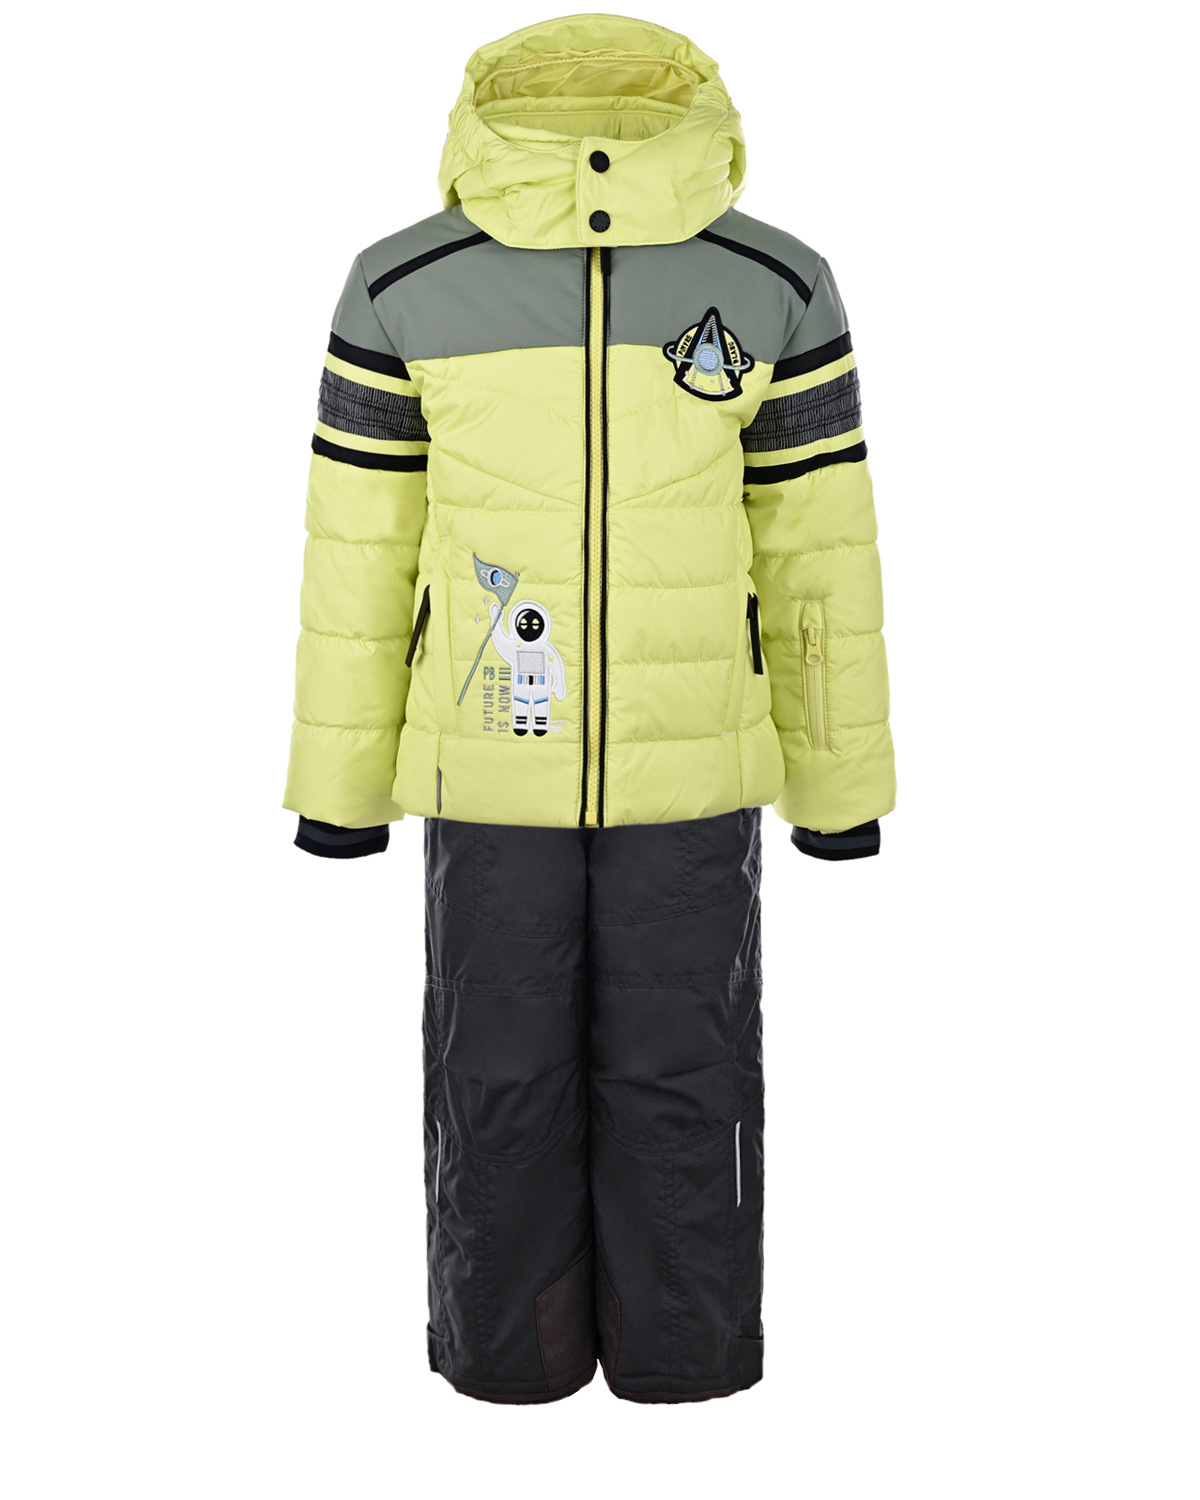 Зимний комплект из салатовой куртки и черного полукомбинезона Poivre Blanc детский, размер 104, цвет салатовый